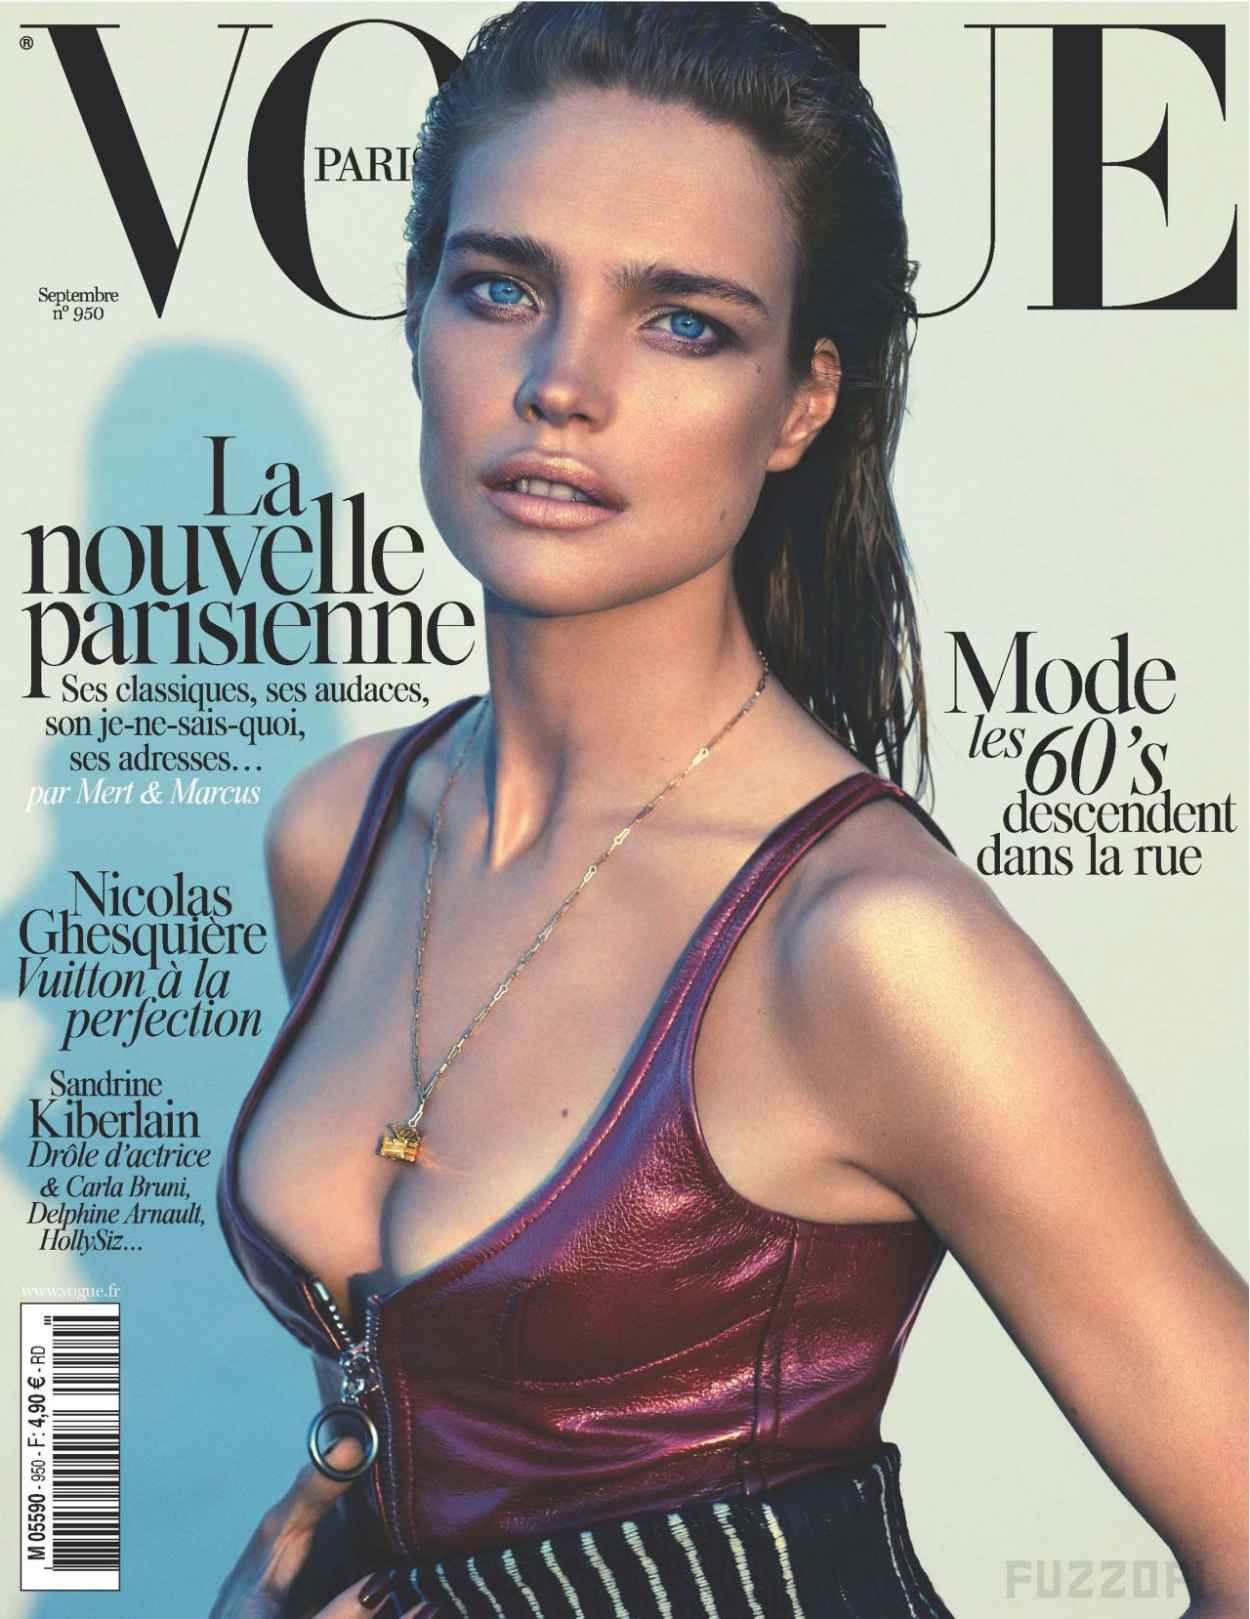 Vogue Paris Collections Pdf To Excel